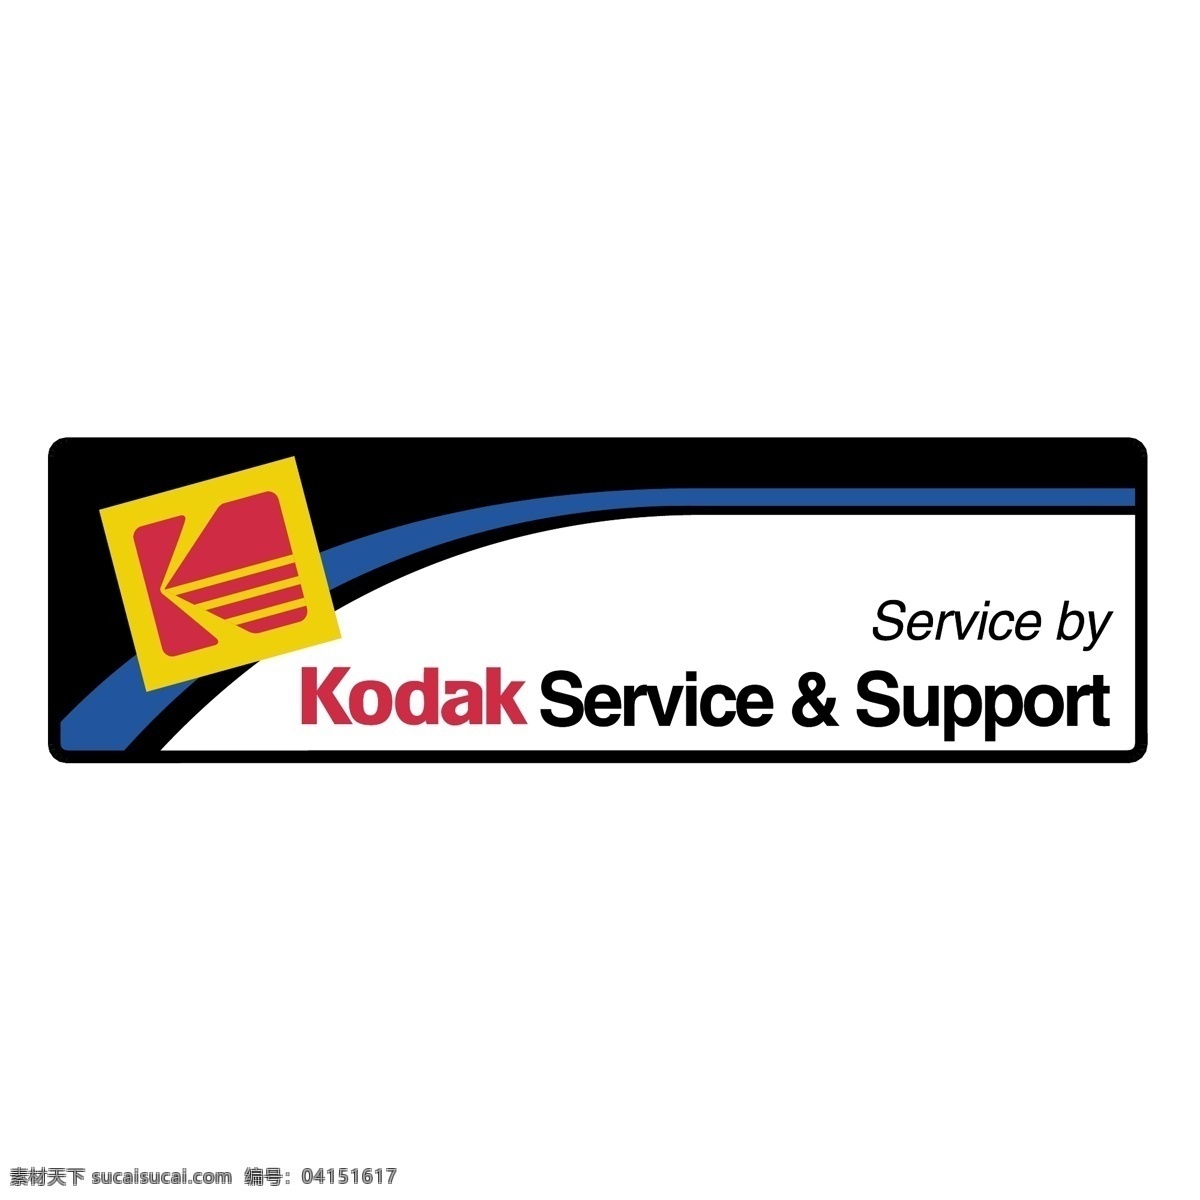 柯达 服务支持 服务 客户服务 柯达的服务 支持向量 向量 客户服务支持 支持服务 支持 机 支持和服务 服务和支持 平面设计服务 矢量图 建筑家居